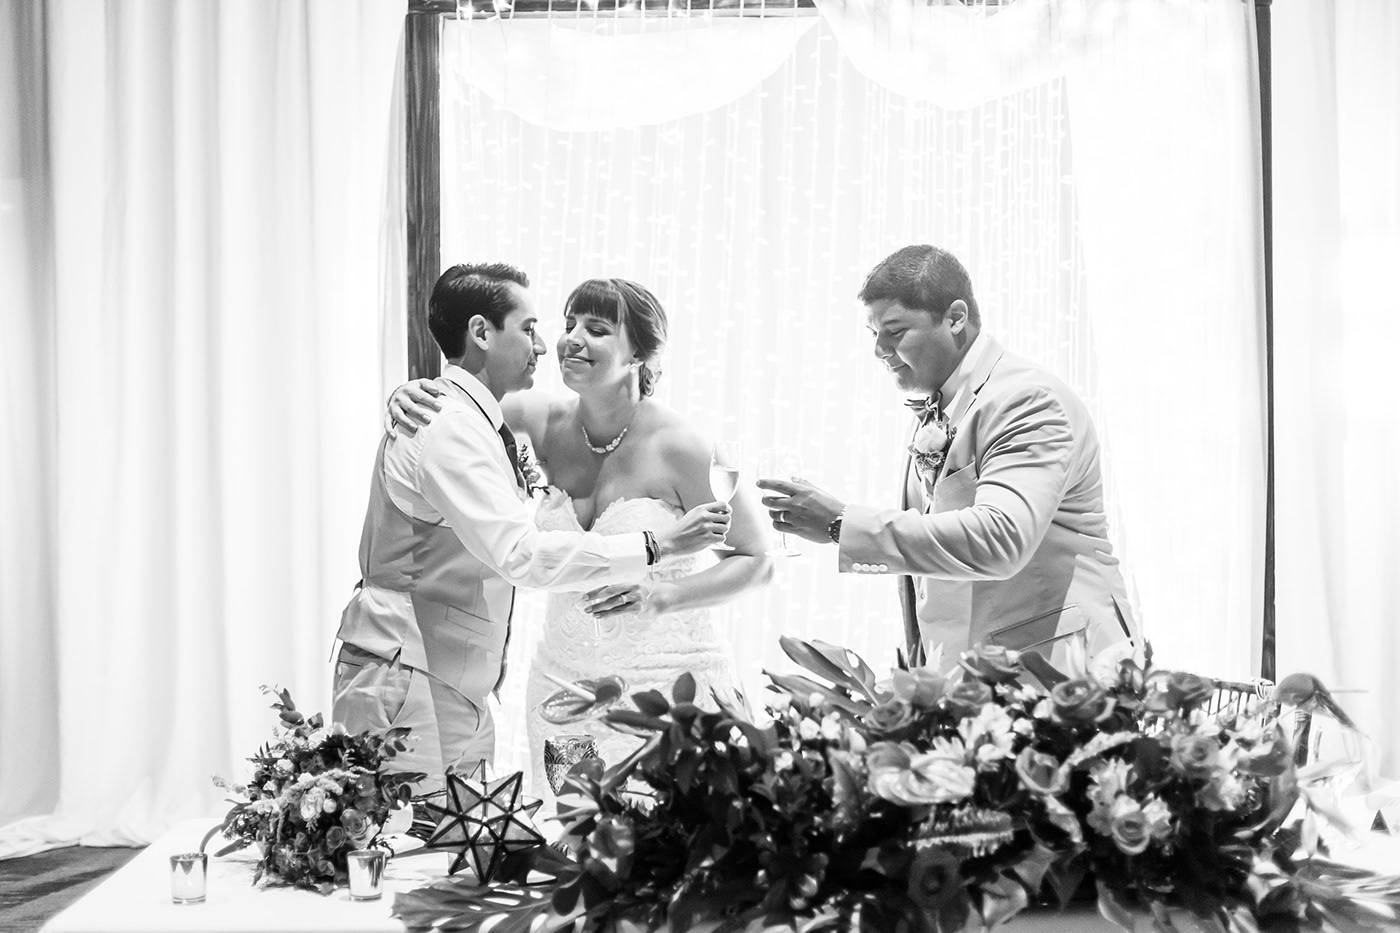 Boda BODAMEXICO cancun Canon Photography rivieramaya wedding WeddingPhotographer weddingphotography